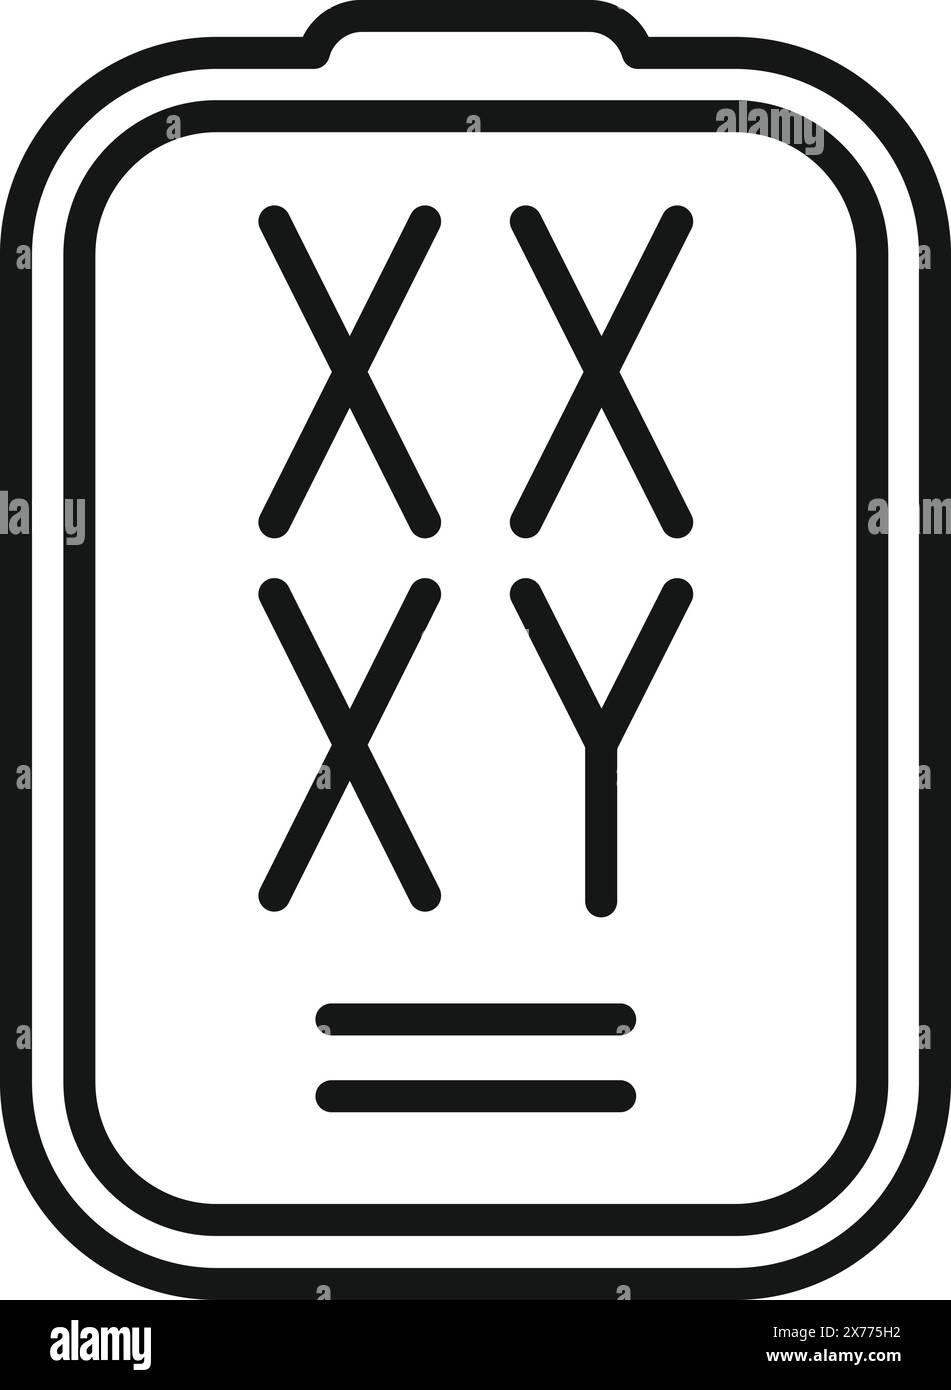 Das Symbol eines klassischen Tictactoe-Spiels auf einem einfachen Brett Stock Vektor